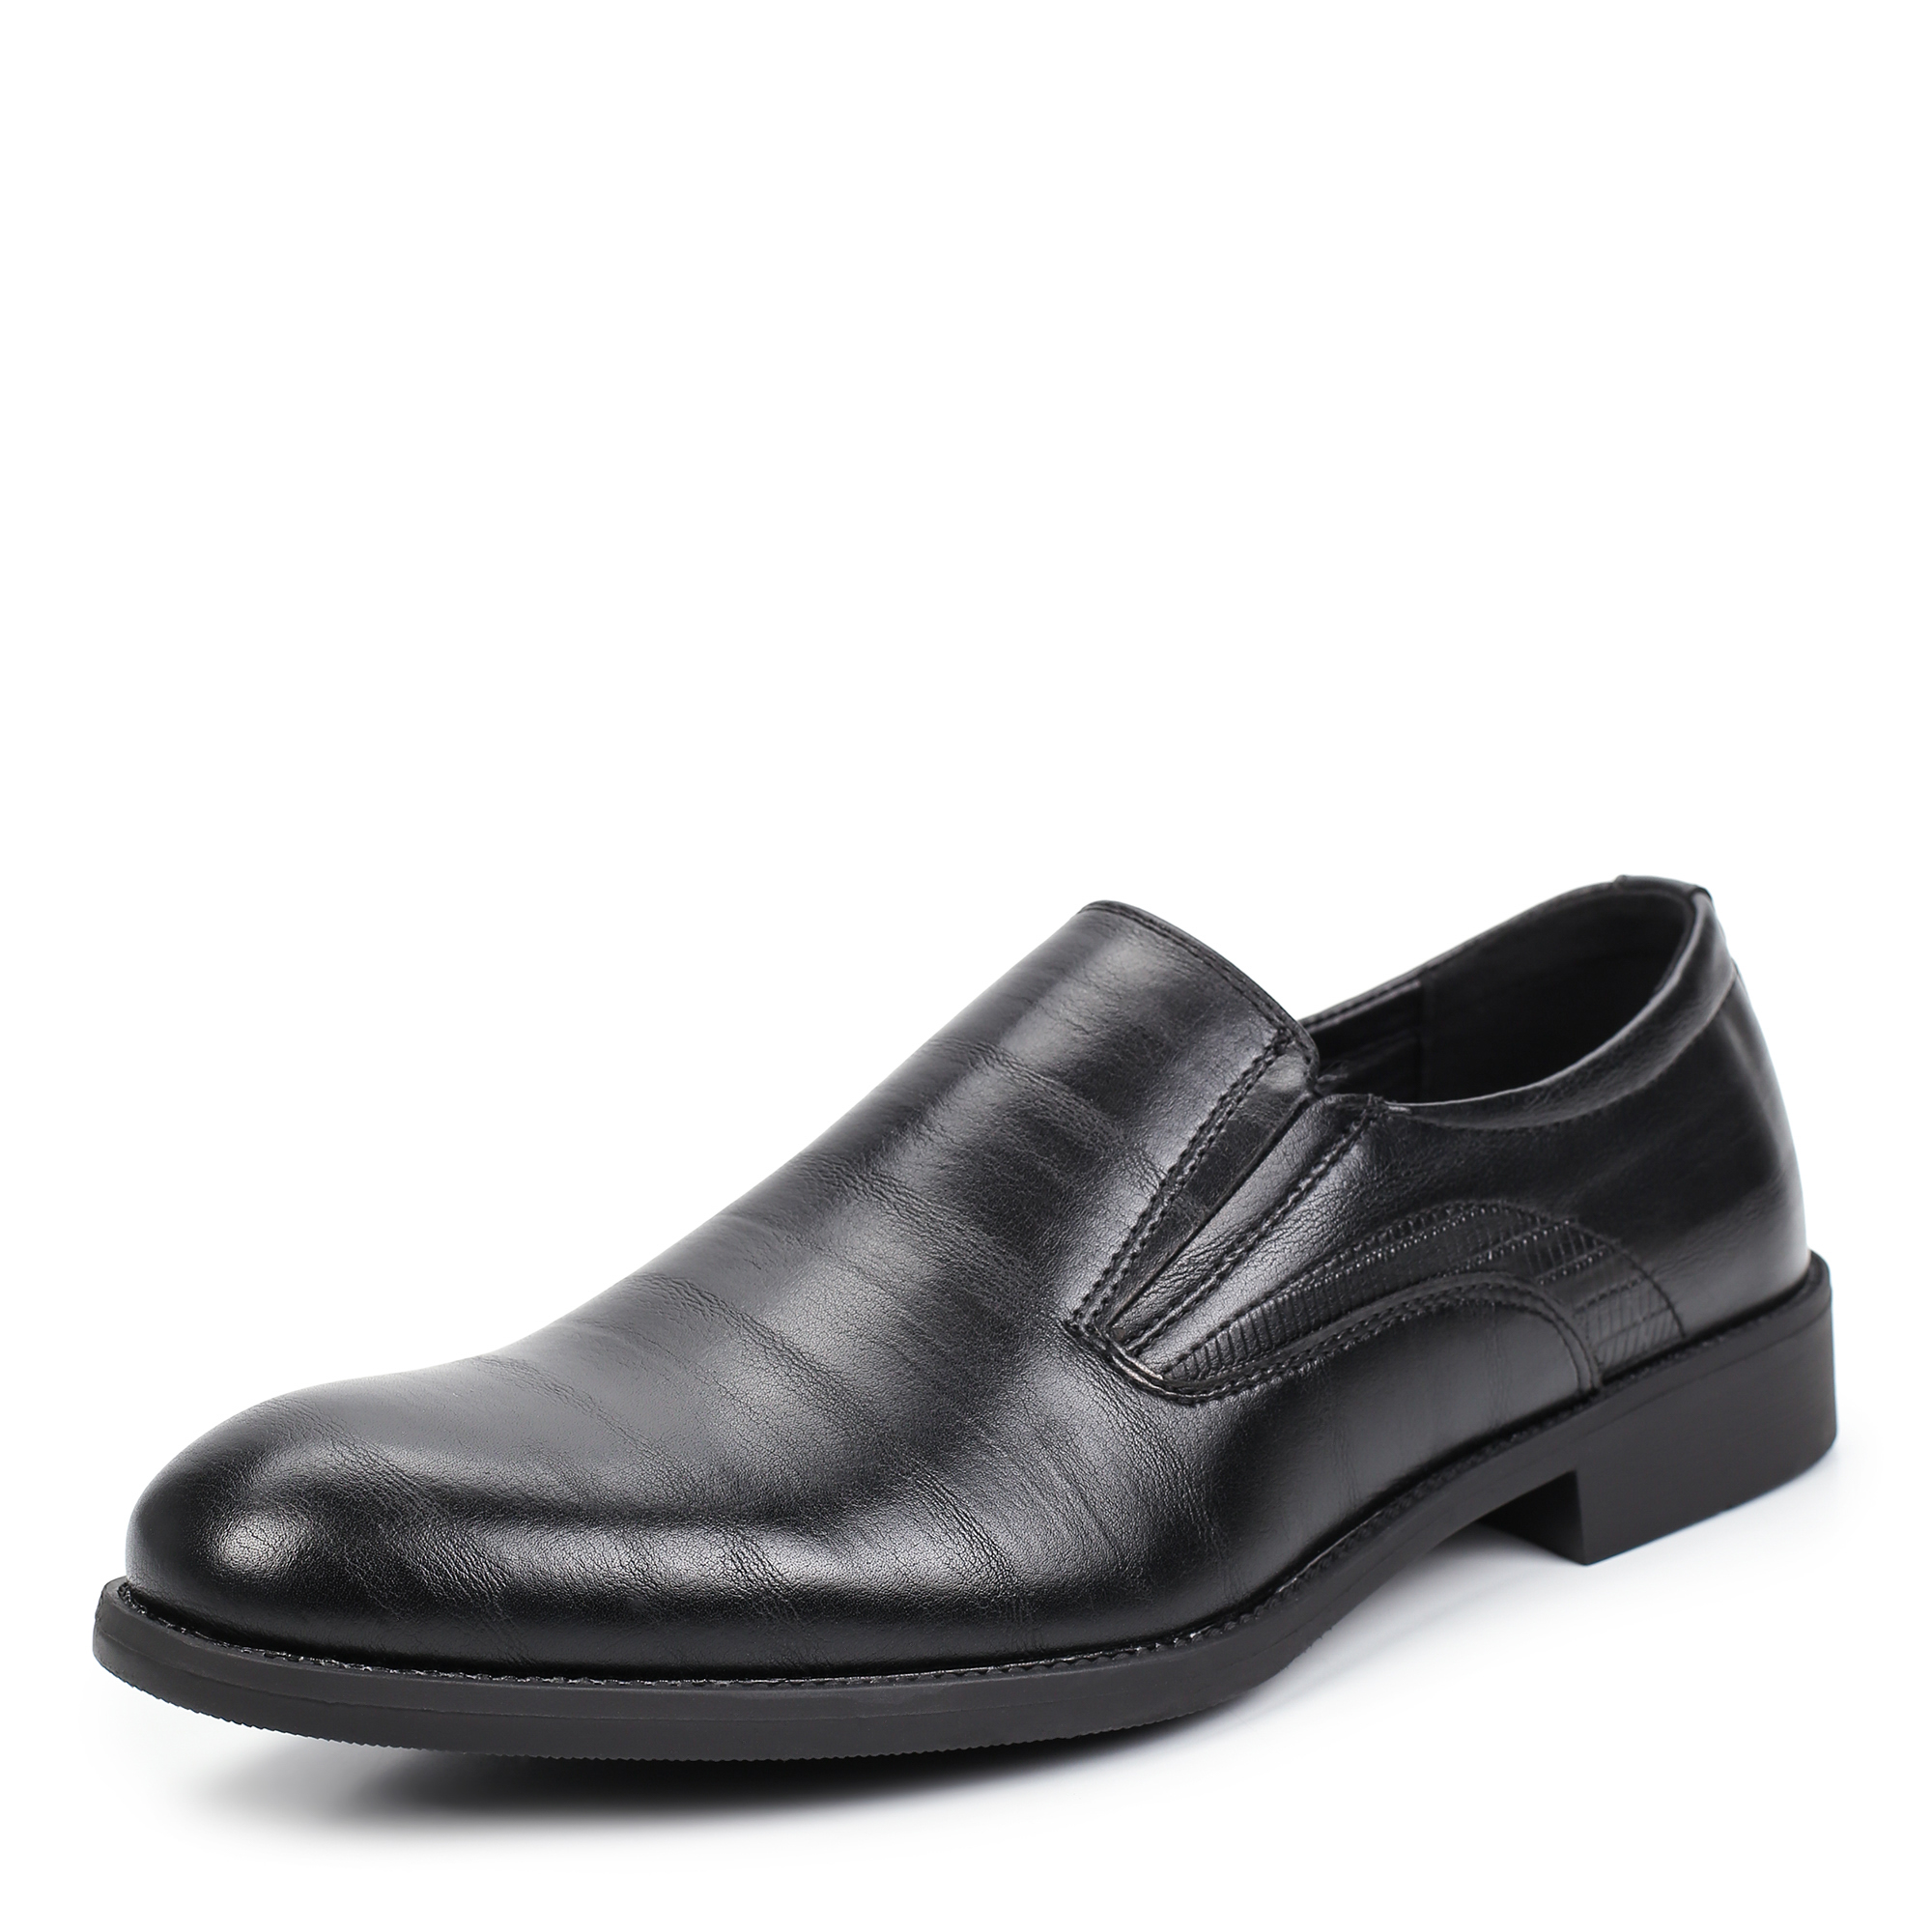 Туфли/полуботинки Thomas Munz 187-174C-1602, цвет черный, размер 43 - фото 2